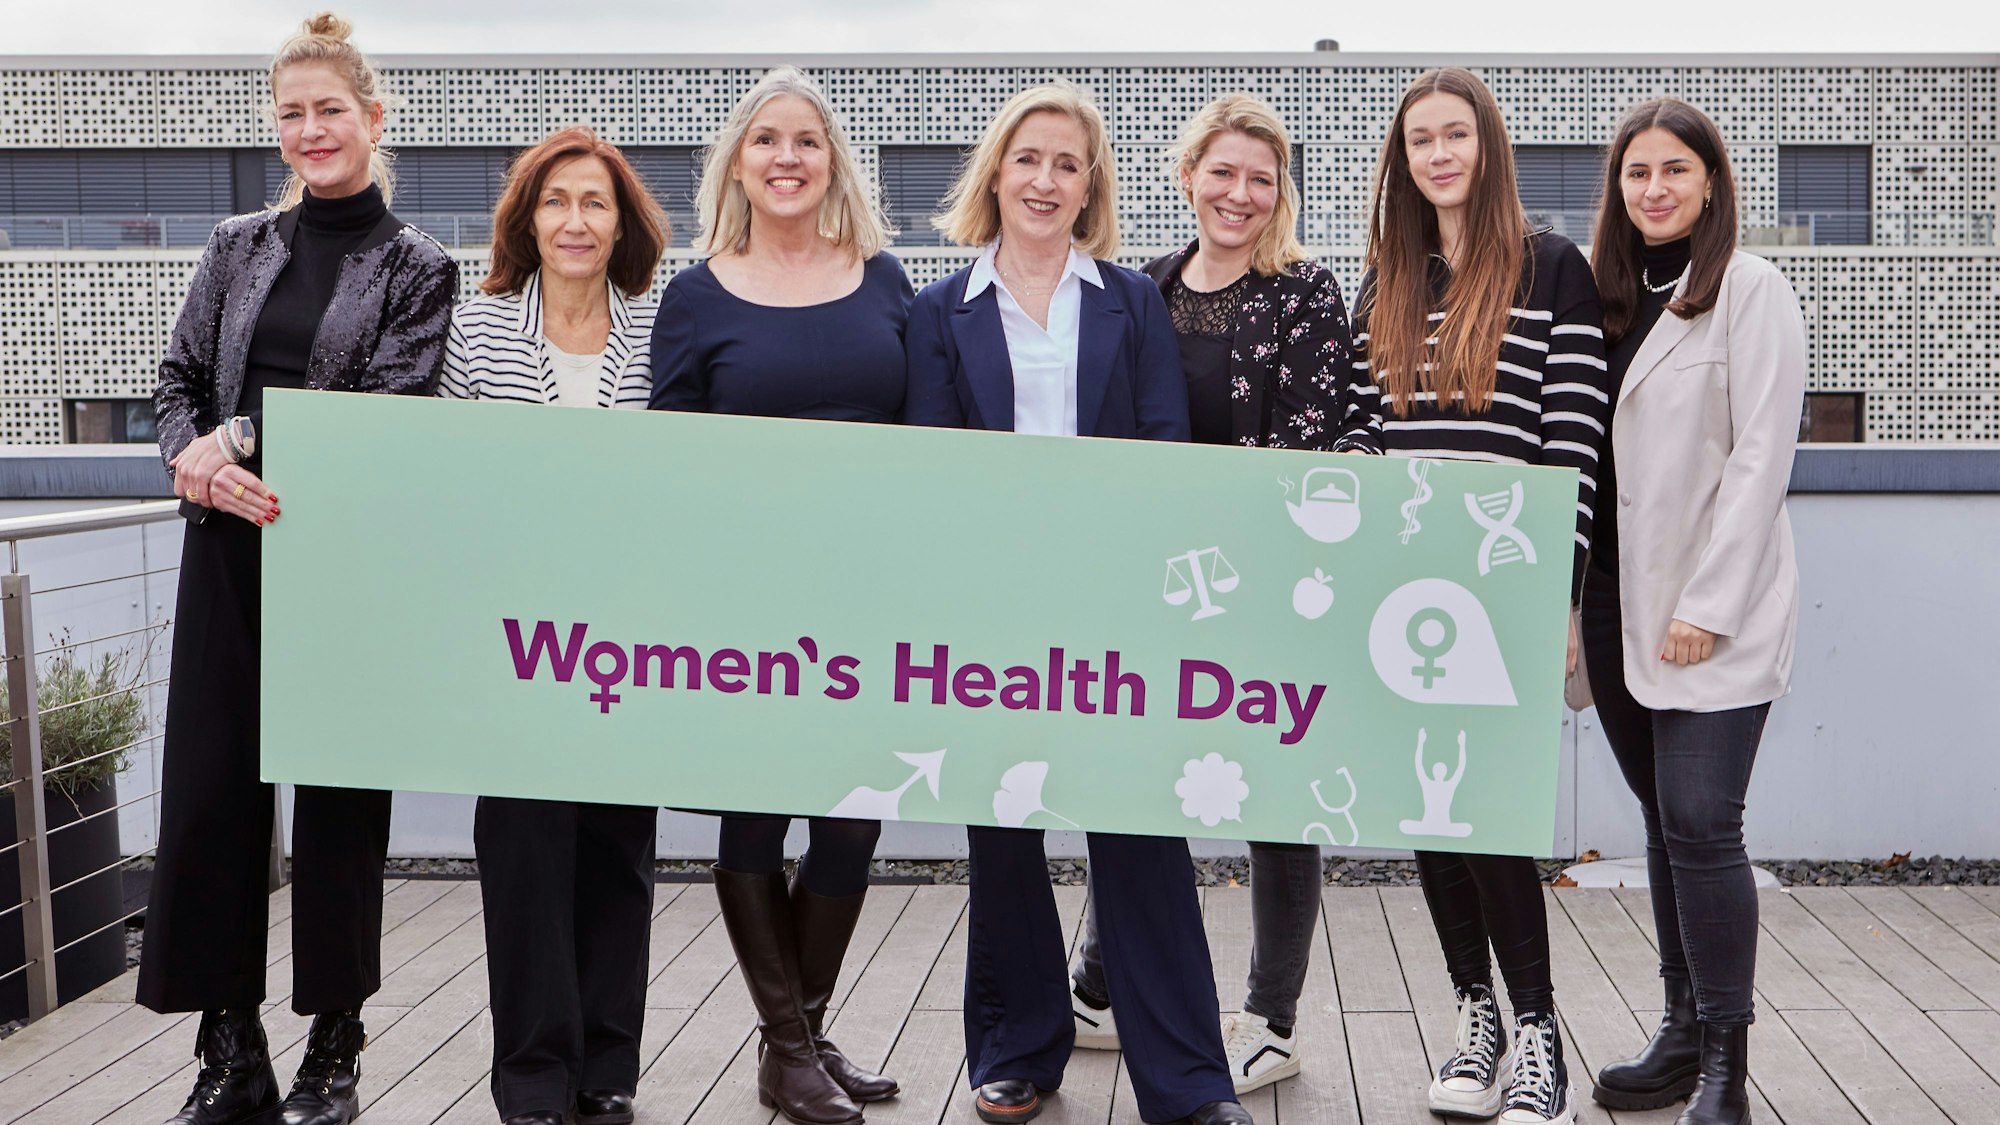 Sechs Frauen halten gemeinsam ein waagerechtes Plakat mit dem Slogan „Women's Health Day“.